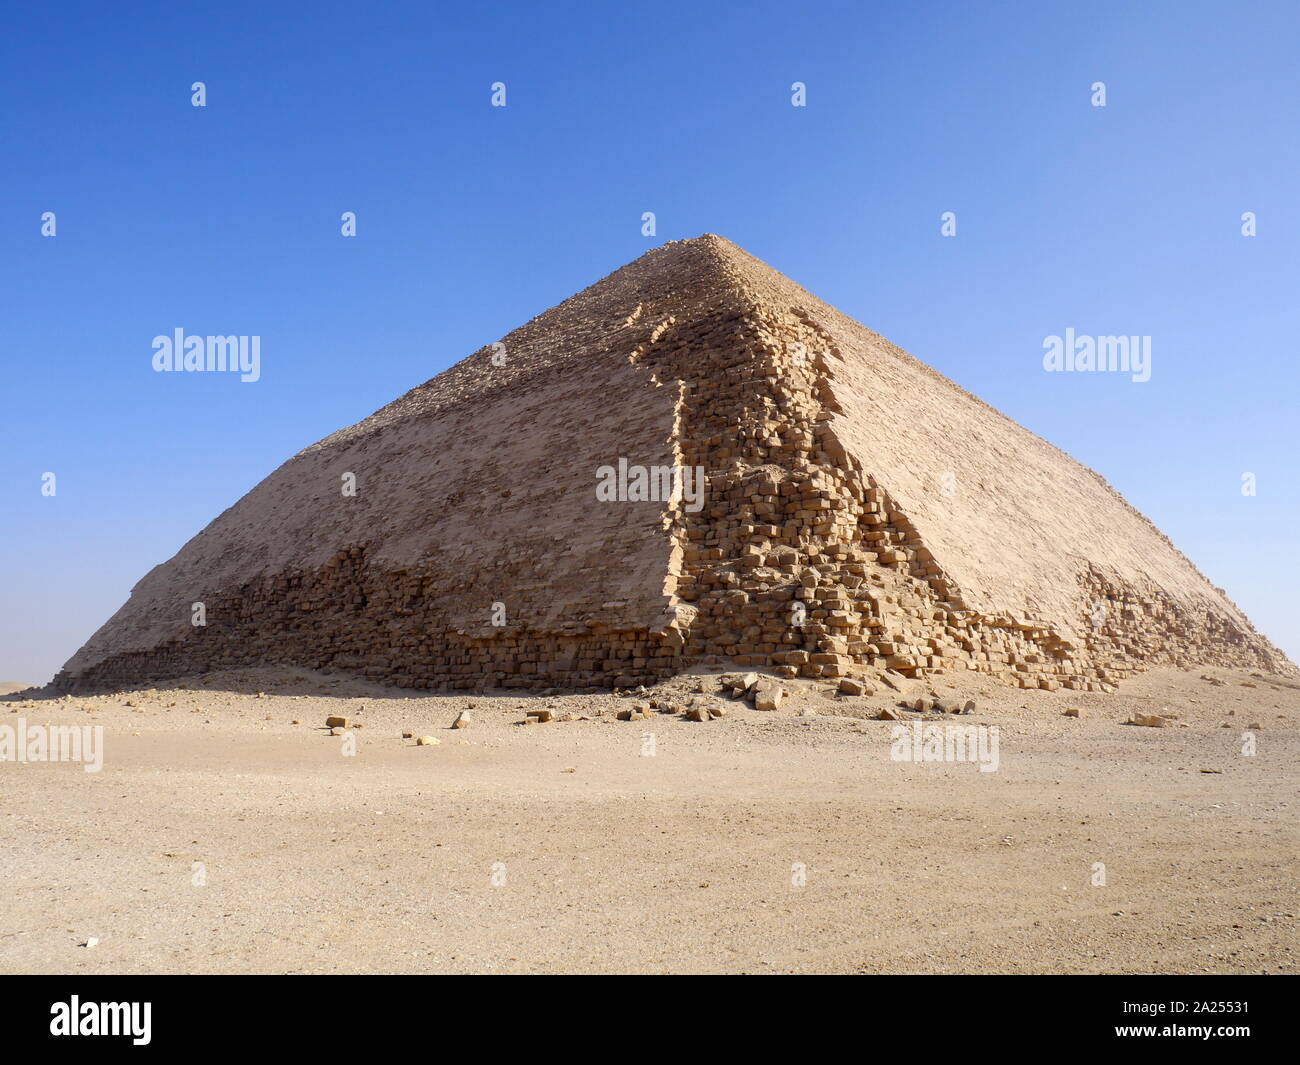 La pyramide rhomboïdale est une ancienne pyramide égyptienne située à la nécropole royale de Dahchour, à environ 40 kilomètres au sud du Caire, construit sous l'Ancien Empire Pharaon Sneferu (ch. 2600 avant J.-C.). Un exemple unique de développement pyramide en Egypte, c'était la deuxième pyramide construite par Sneferu. La pyramide rhomboïdale s'élève du désert à une inclinaison de 54 degrés, mais la section du haut (au-dessus de 47 mètres) est construit à l'angle de moins 43 degrés, la pyramide de prêt très évident de son apparence "refoulées". Banque D'Images